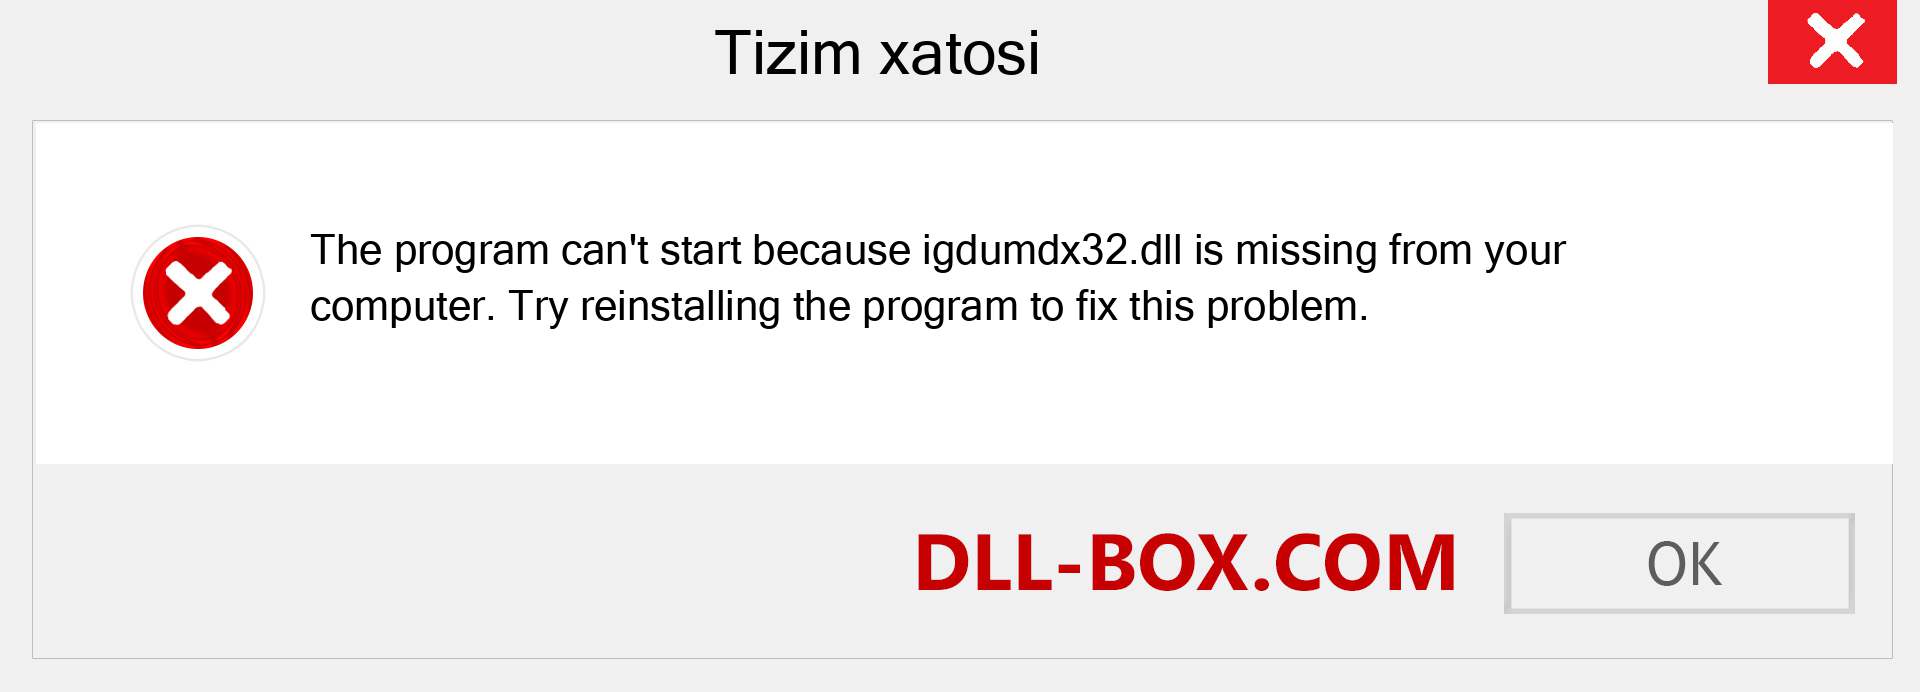 igdumdx32.dll fayli yo'qolganmi?. Windows 7, 8, 10 uchun yuklab olish - Windowsda igdumdx32 dll etishmayotgan xatoni tuzating, rasmlar, rasmlar